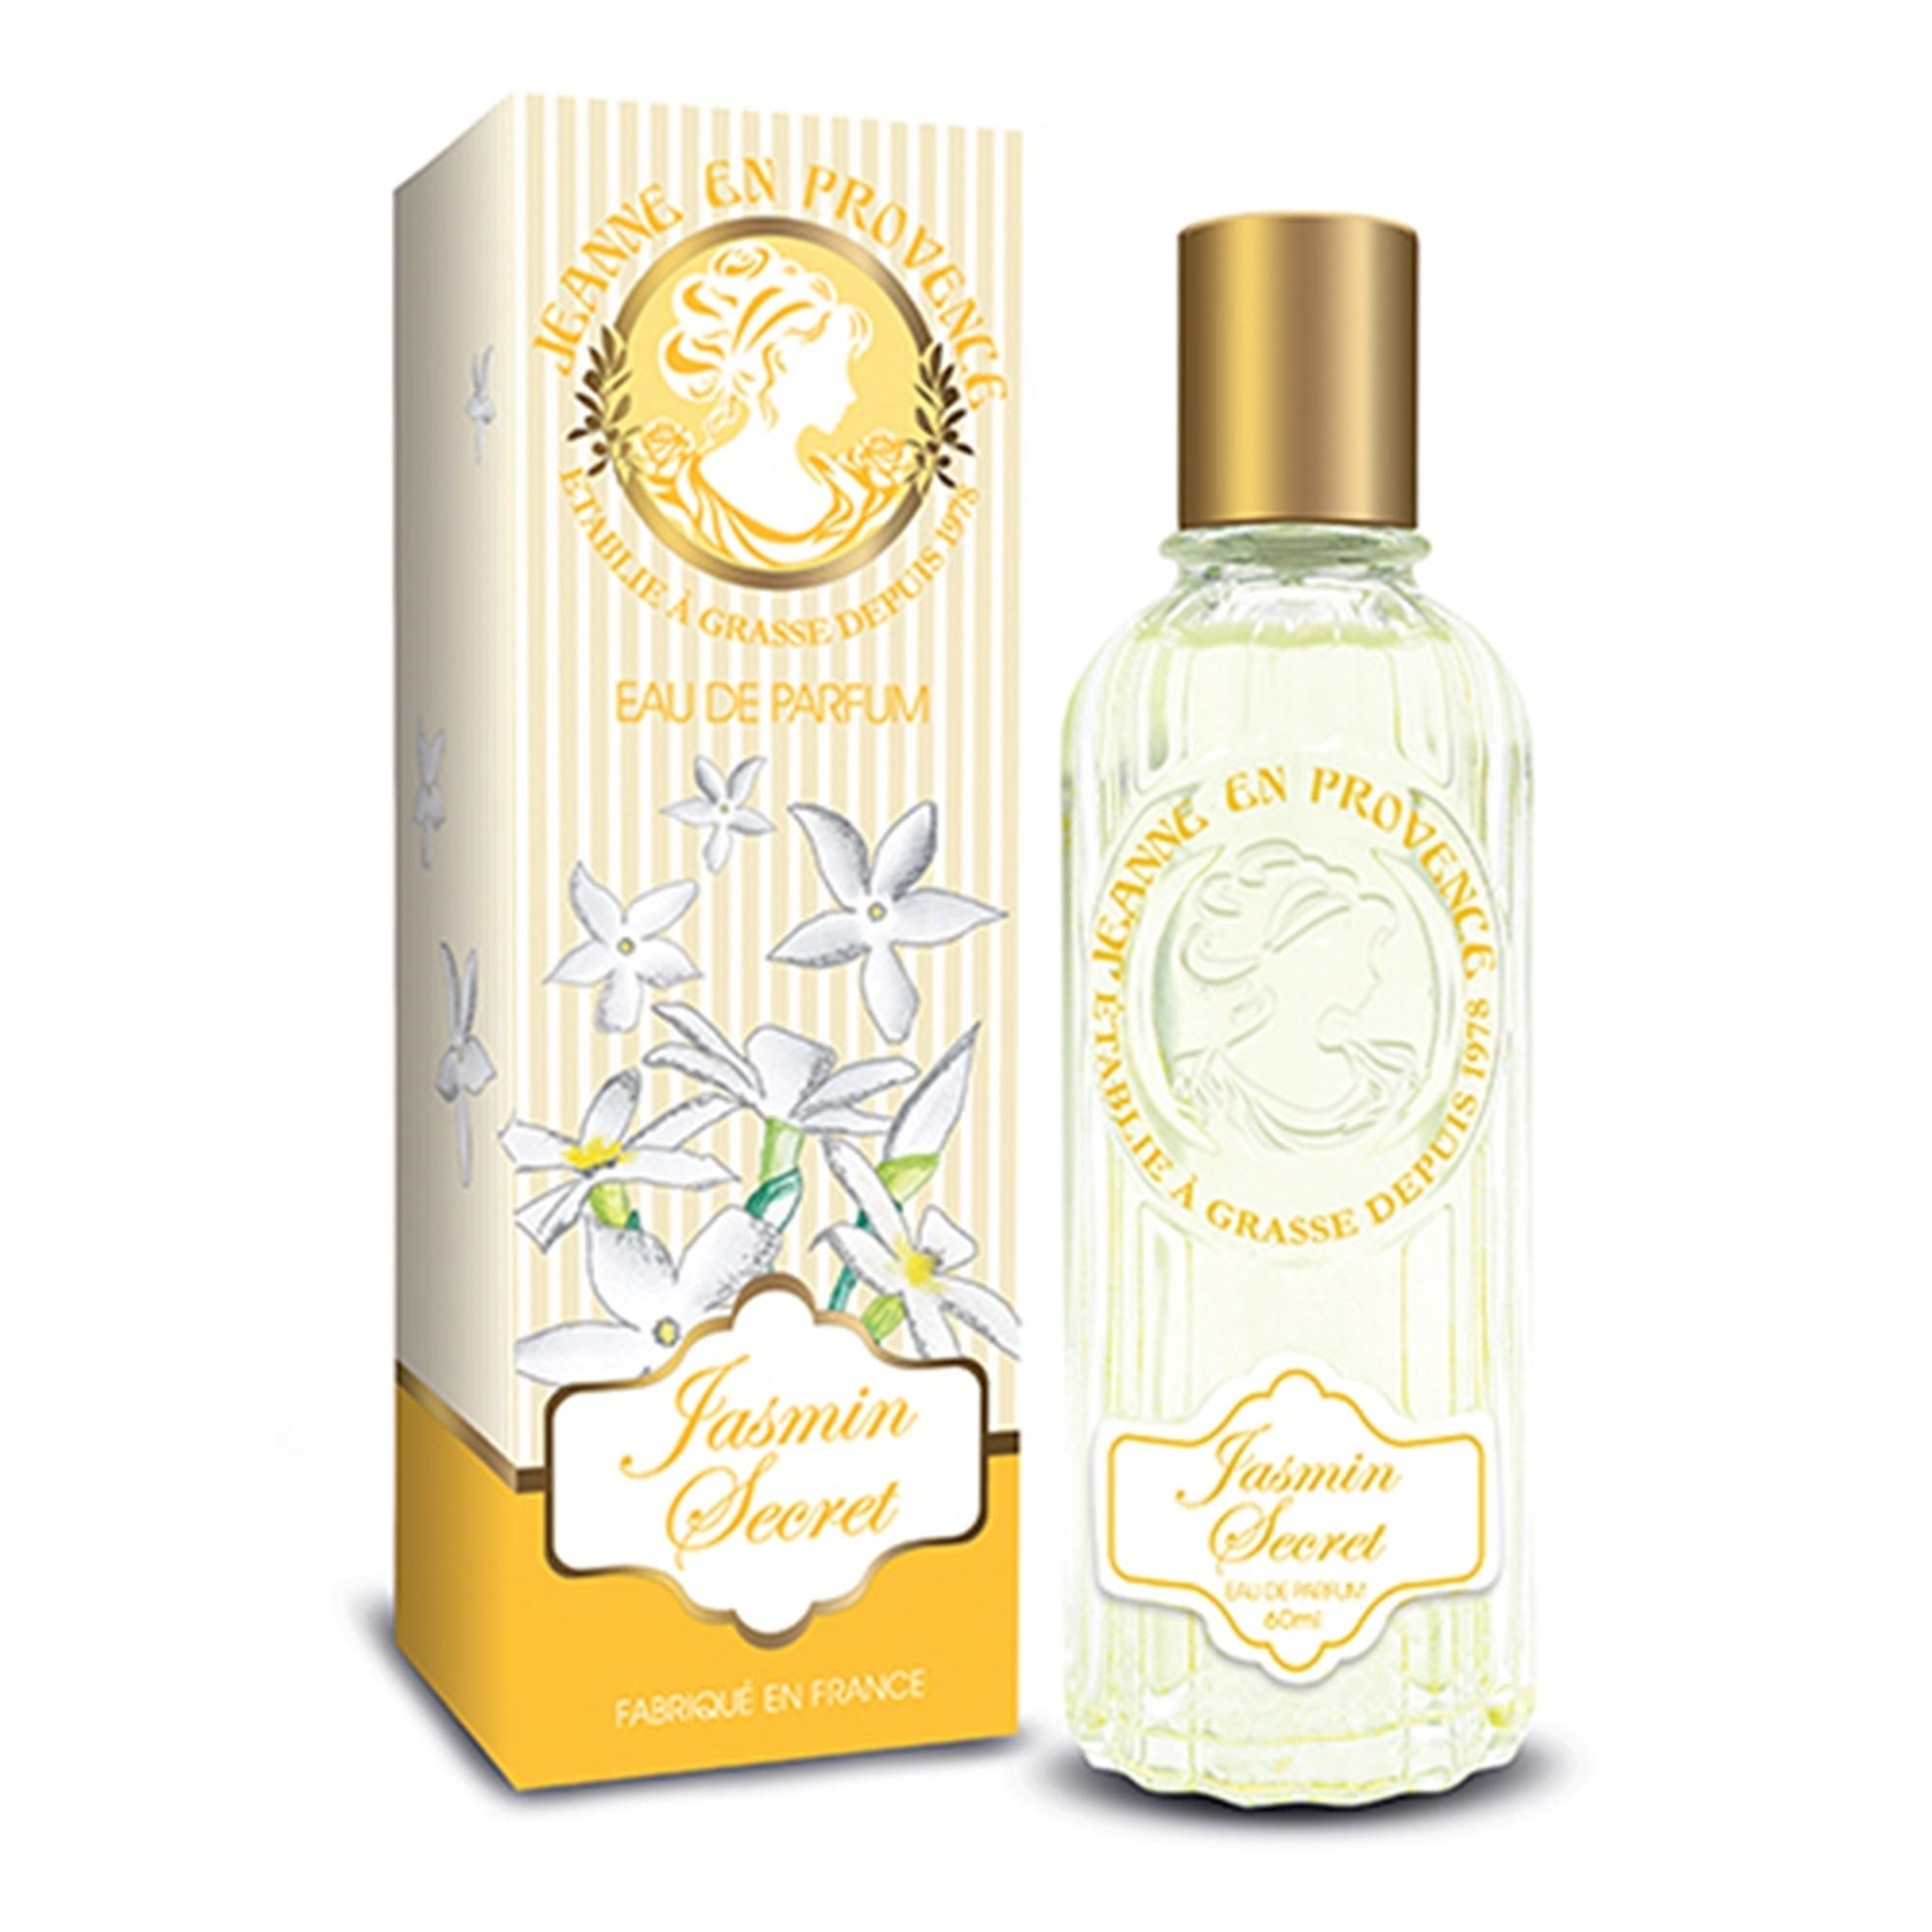 Jeanne en Provence Jasmin Secret - Eau de Parfum